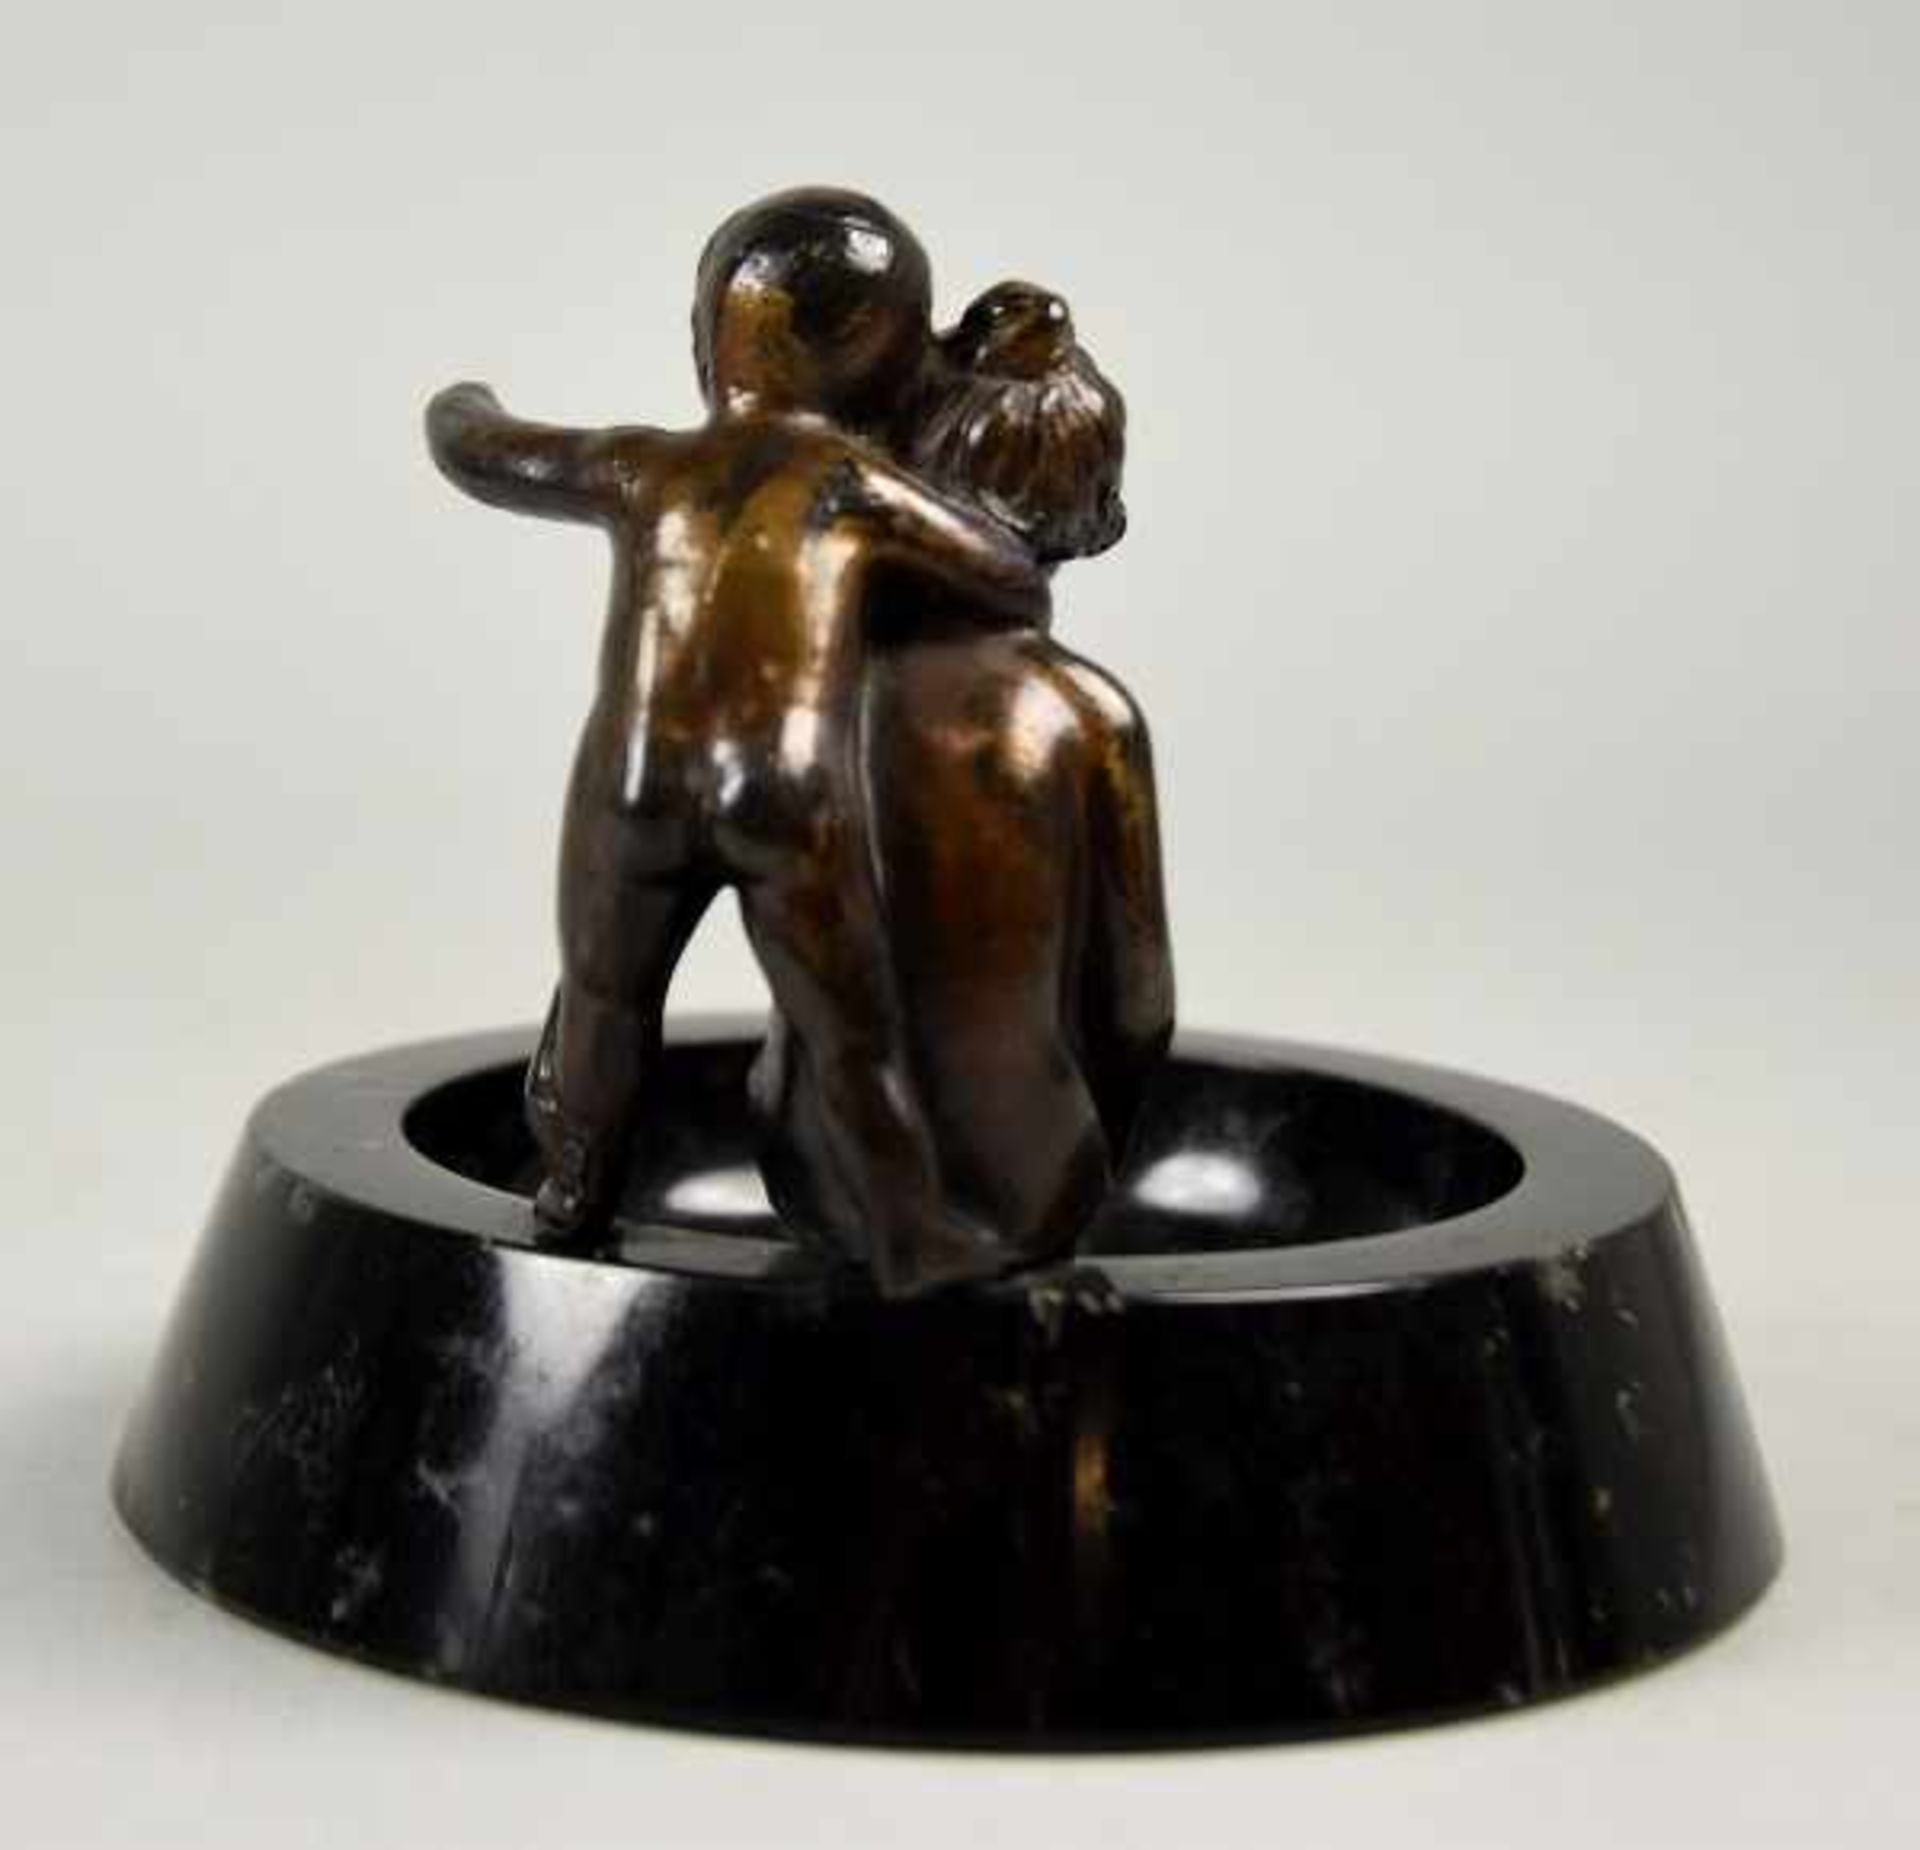 SCHALE "Junge und Mädchen" aus Bronze, auf schwarzem runden Marmoraschenbecher sitzend, H 11cm u. - Image 3 of 3